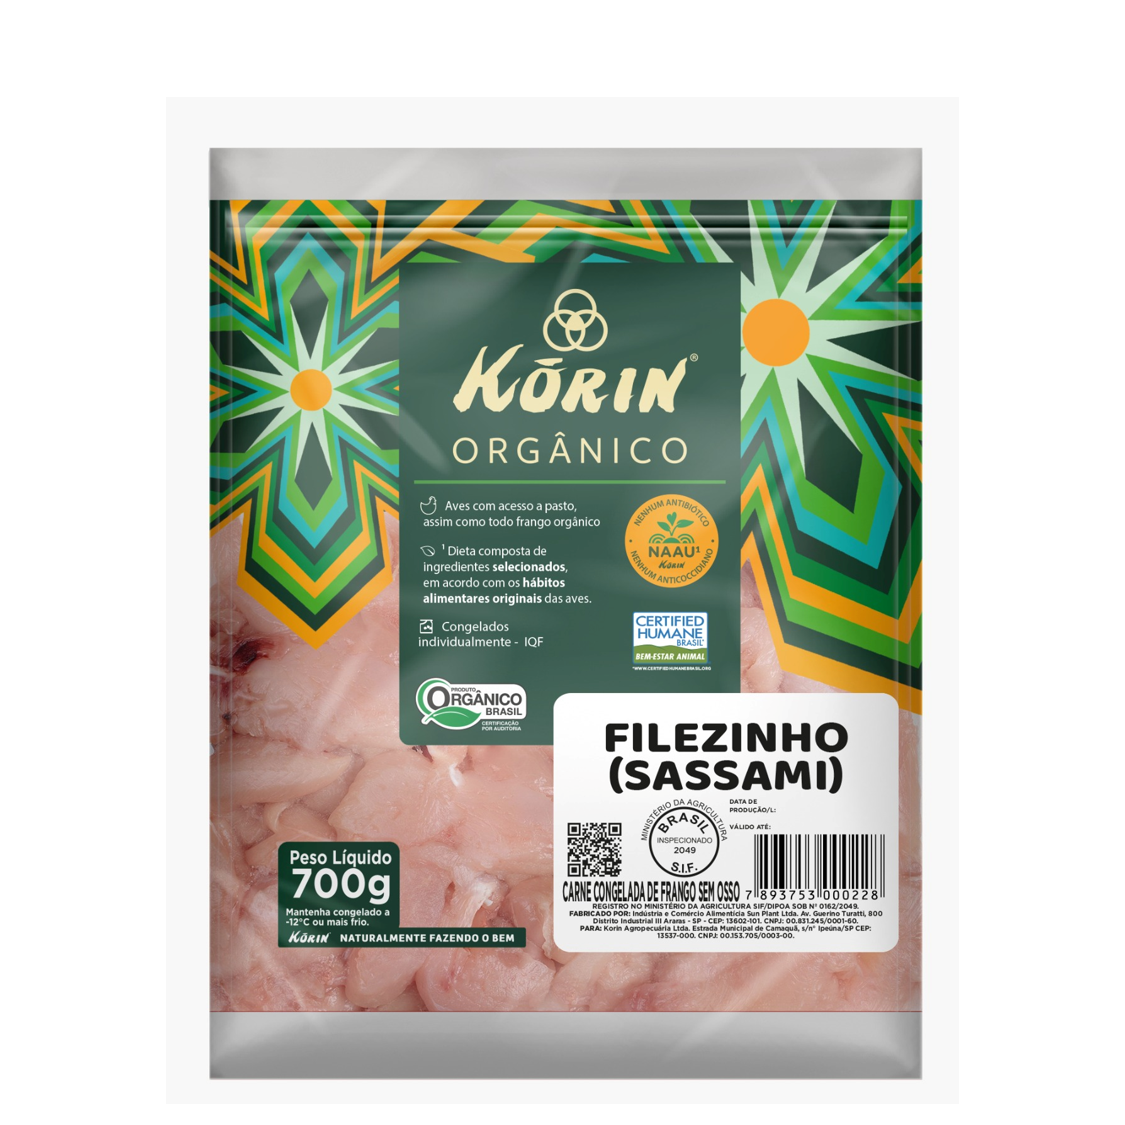 Sassami de Frango Orgânico (700g) – Korin